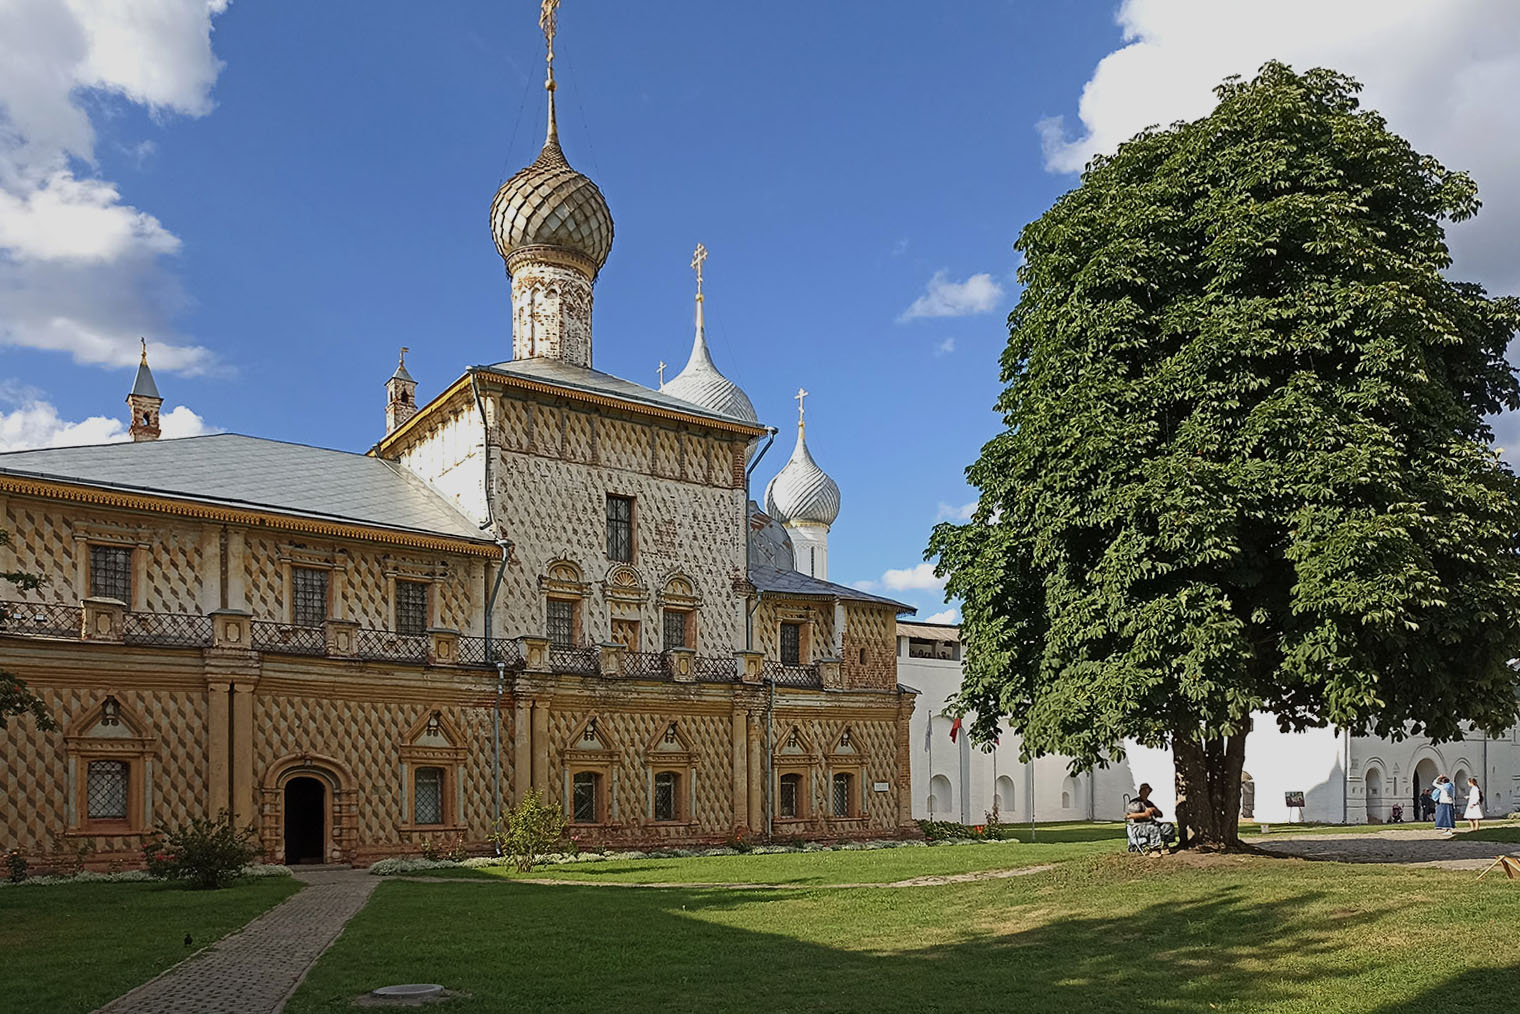 Одигитриевская церковь — одно из немногих зданий кремля не белого цвета. Стены выкрасили под бриллиантовый руст — создается впечатление, что они рельефные